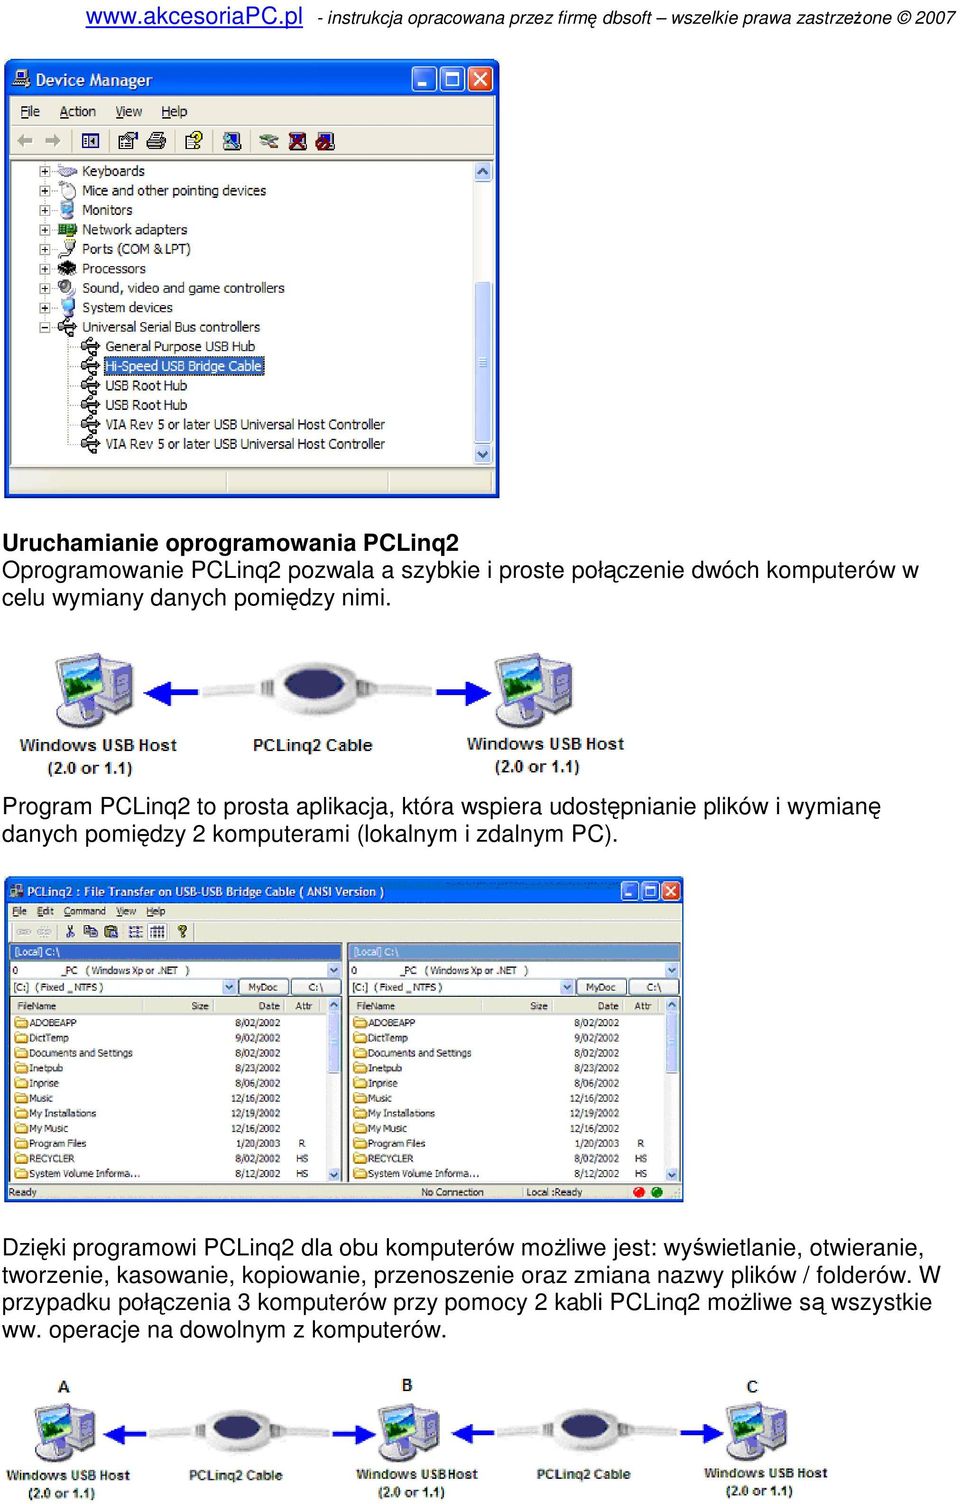 Dzięki programowi PCLinq2 dla obu komputerów moŝliwe jest: wyświetlanie, otwieranie, tworzenie, kasowanie, kopiowanie, przenoszenie oraz zmiana